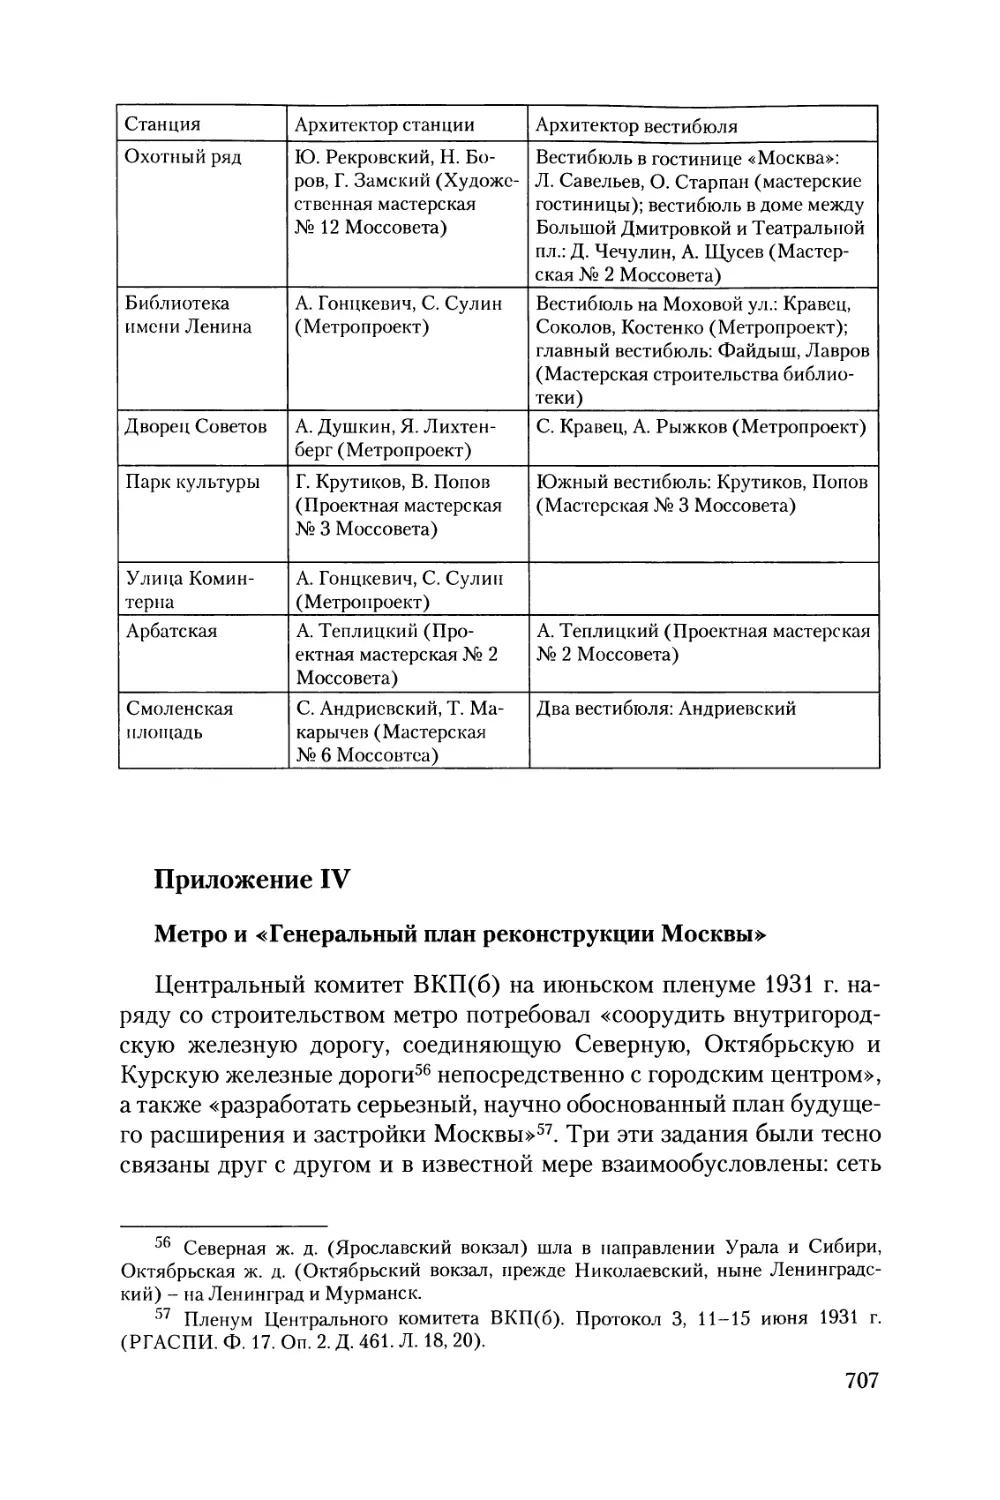 Приложение IV. Метро и «Генеральный план реконструкции Москвы»